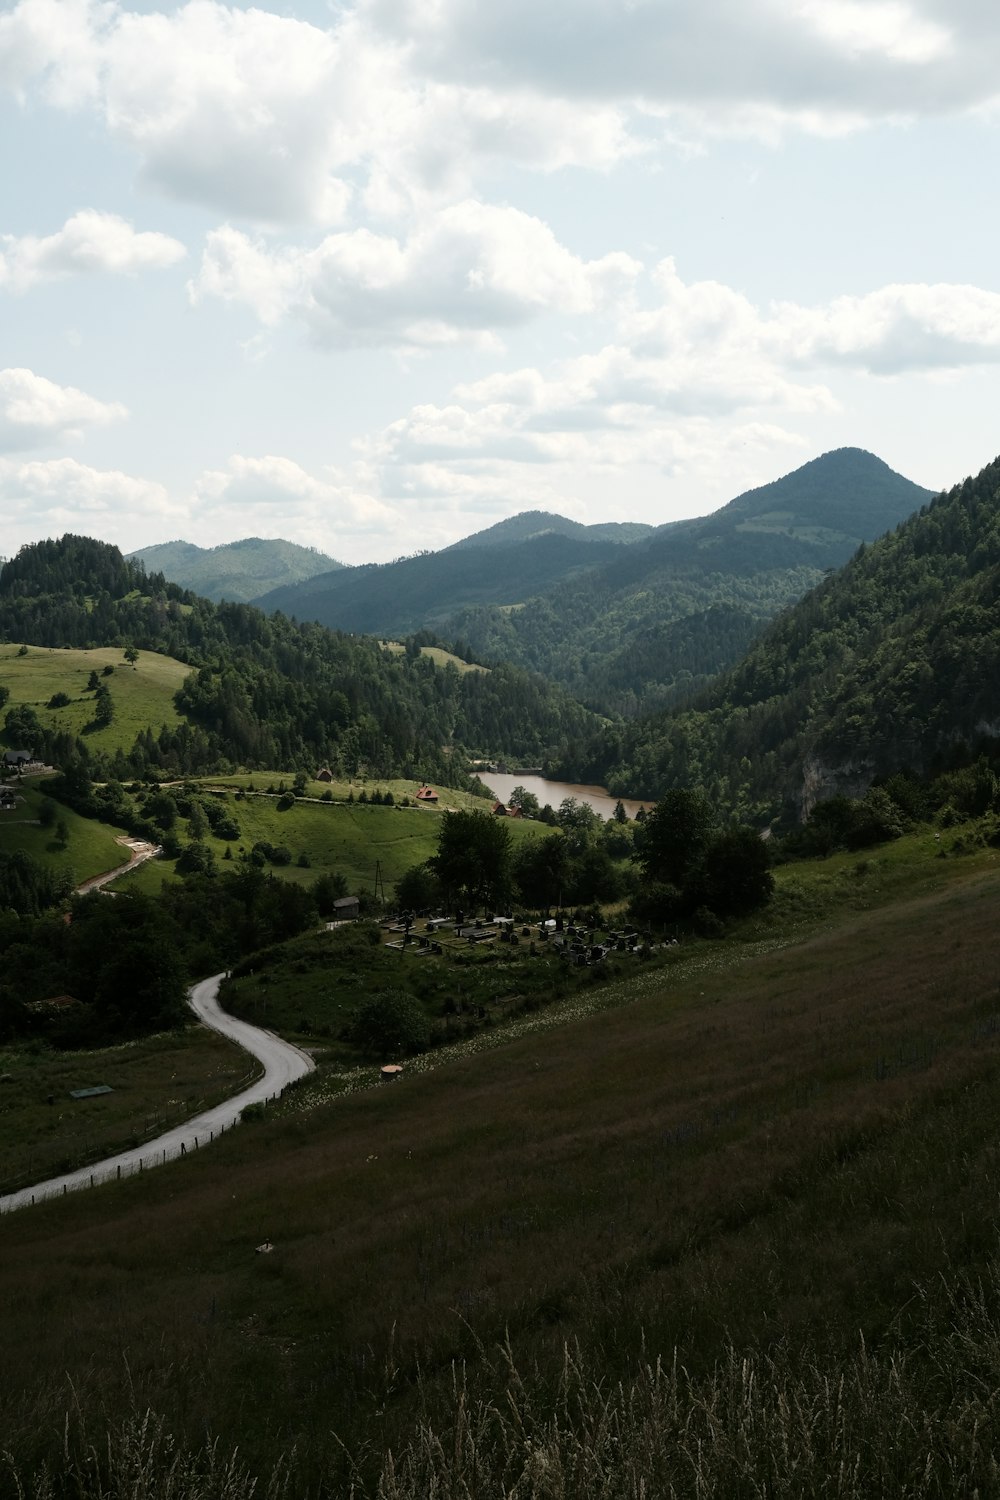 Ein malerischer Blick auf ein Tal, durch das ein Fluss fließt